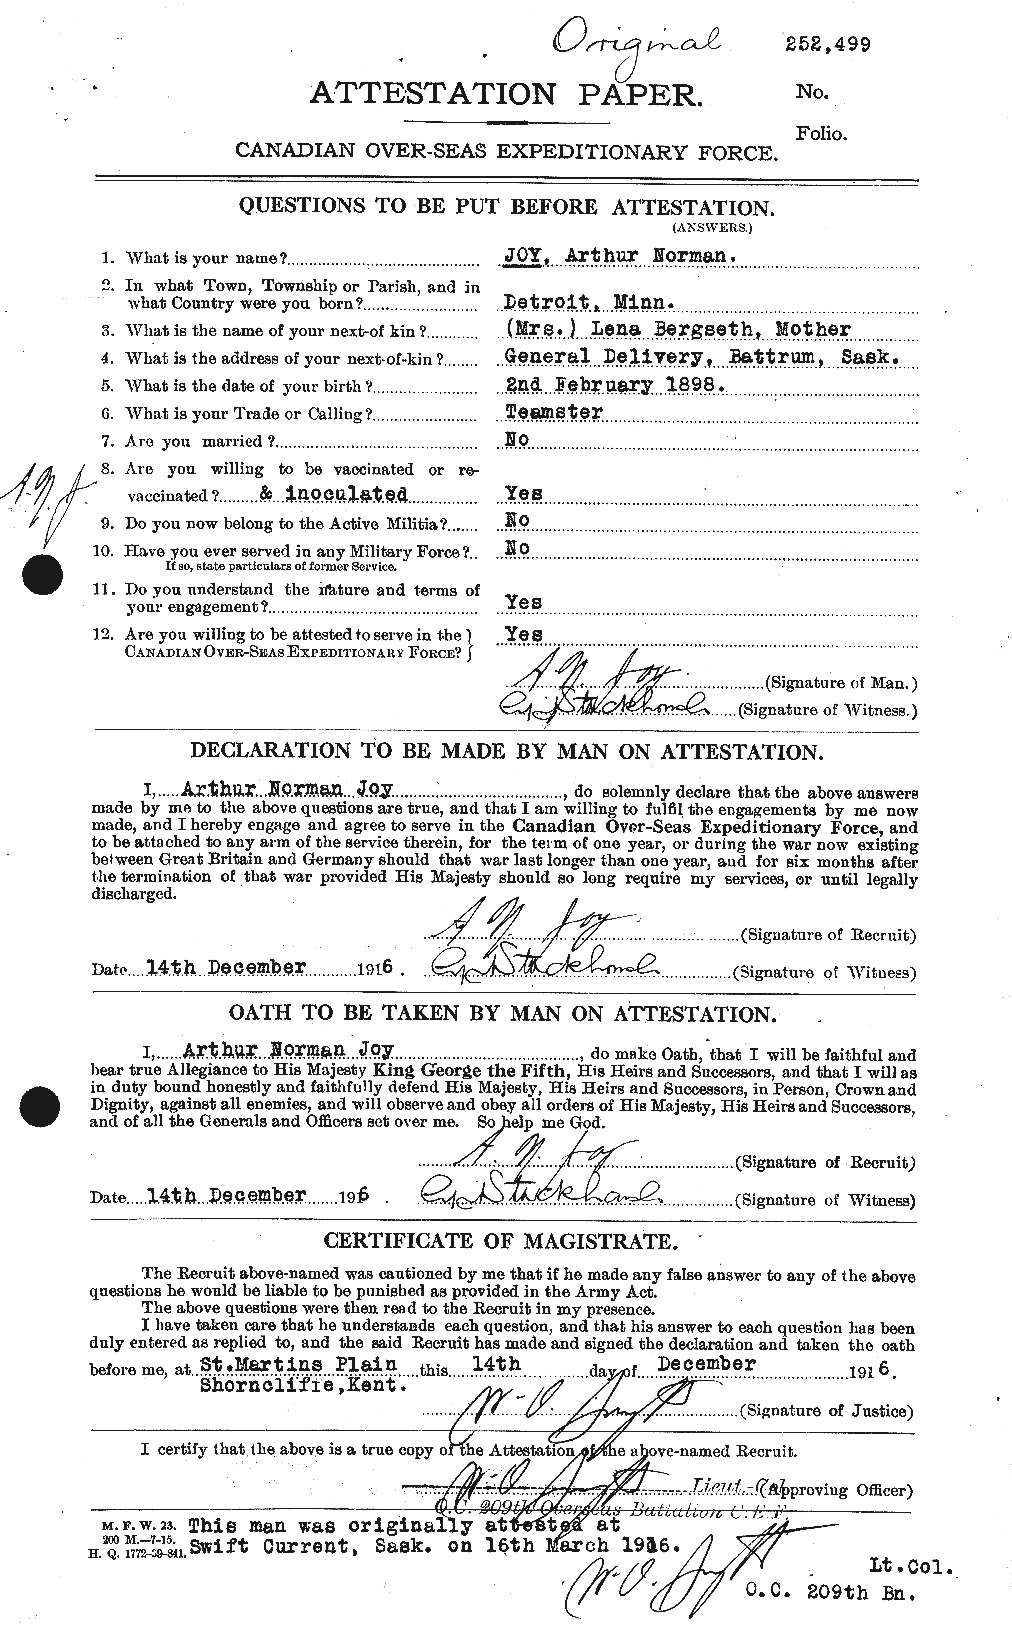 Dossiers du Personnel de la Première Guerre mondiale - CEC 426355a